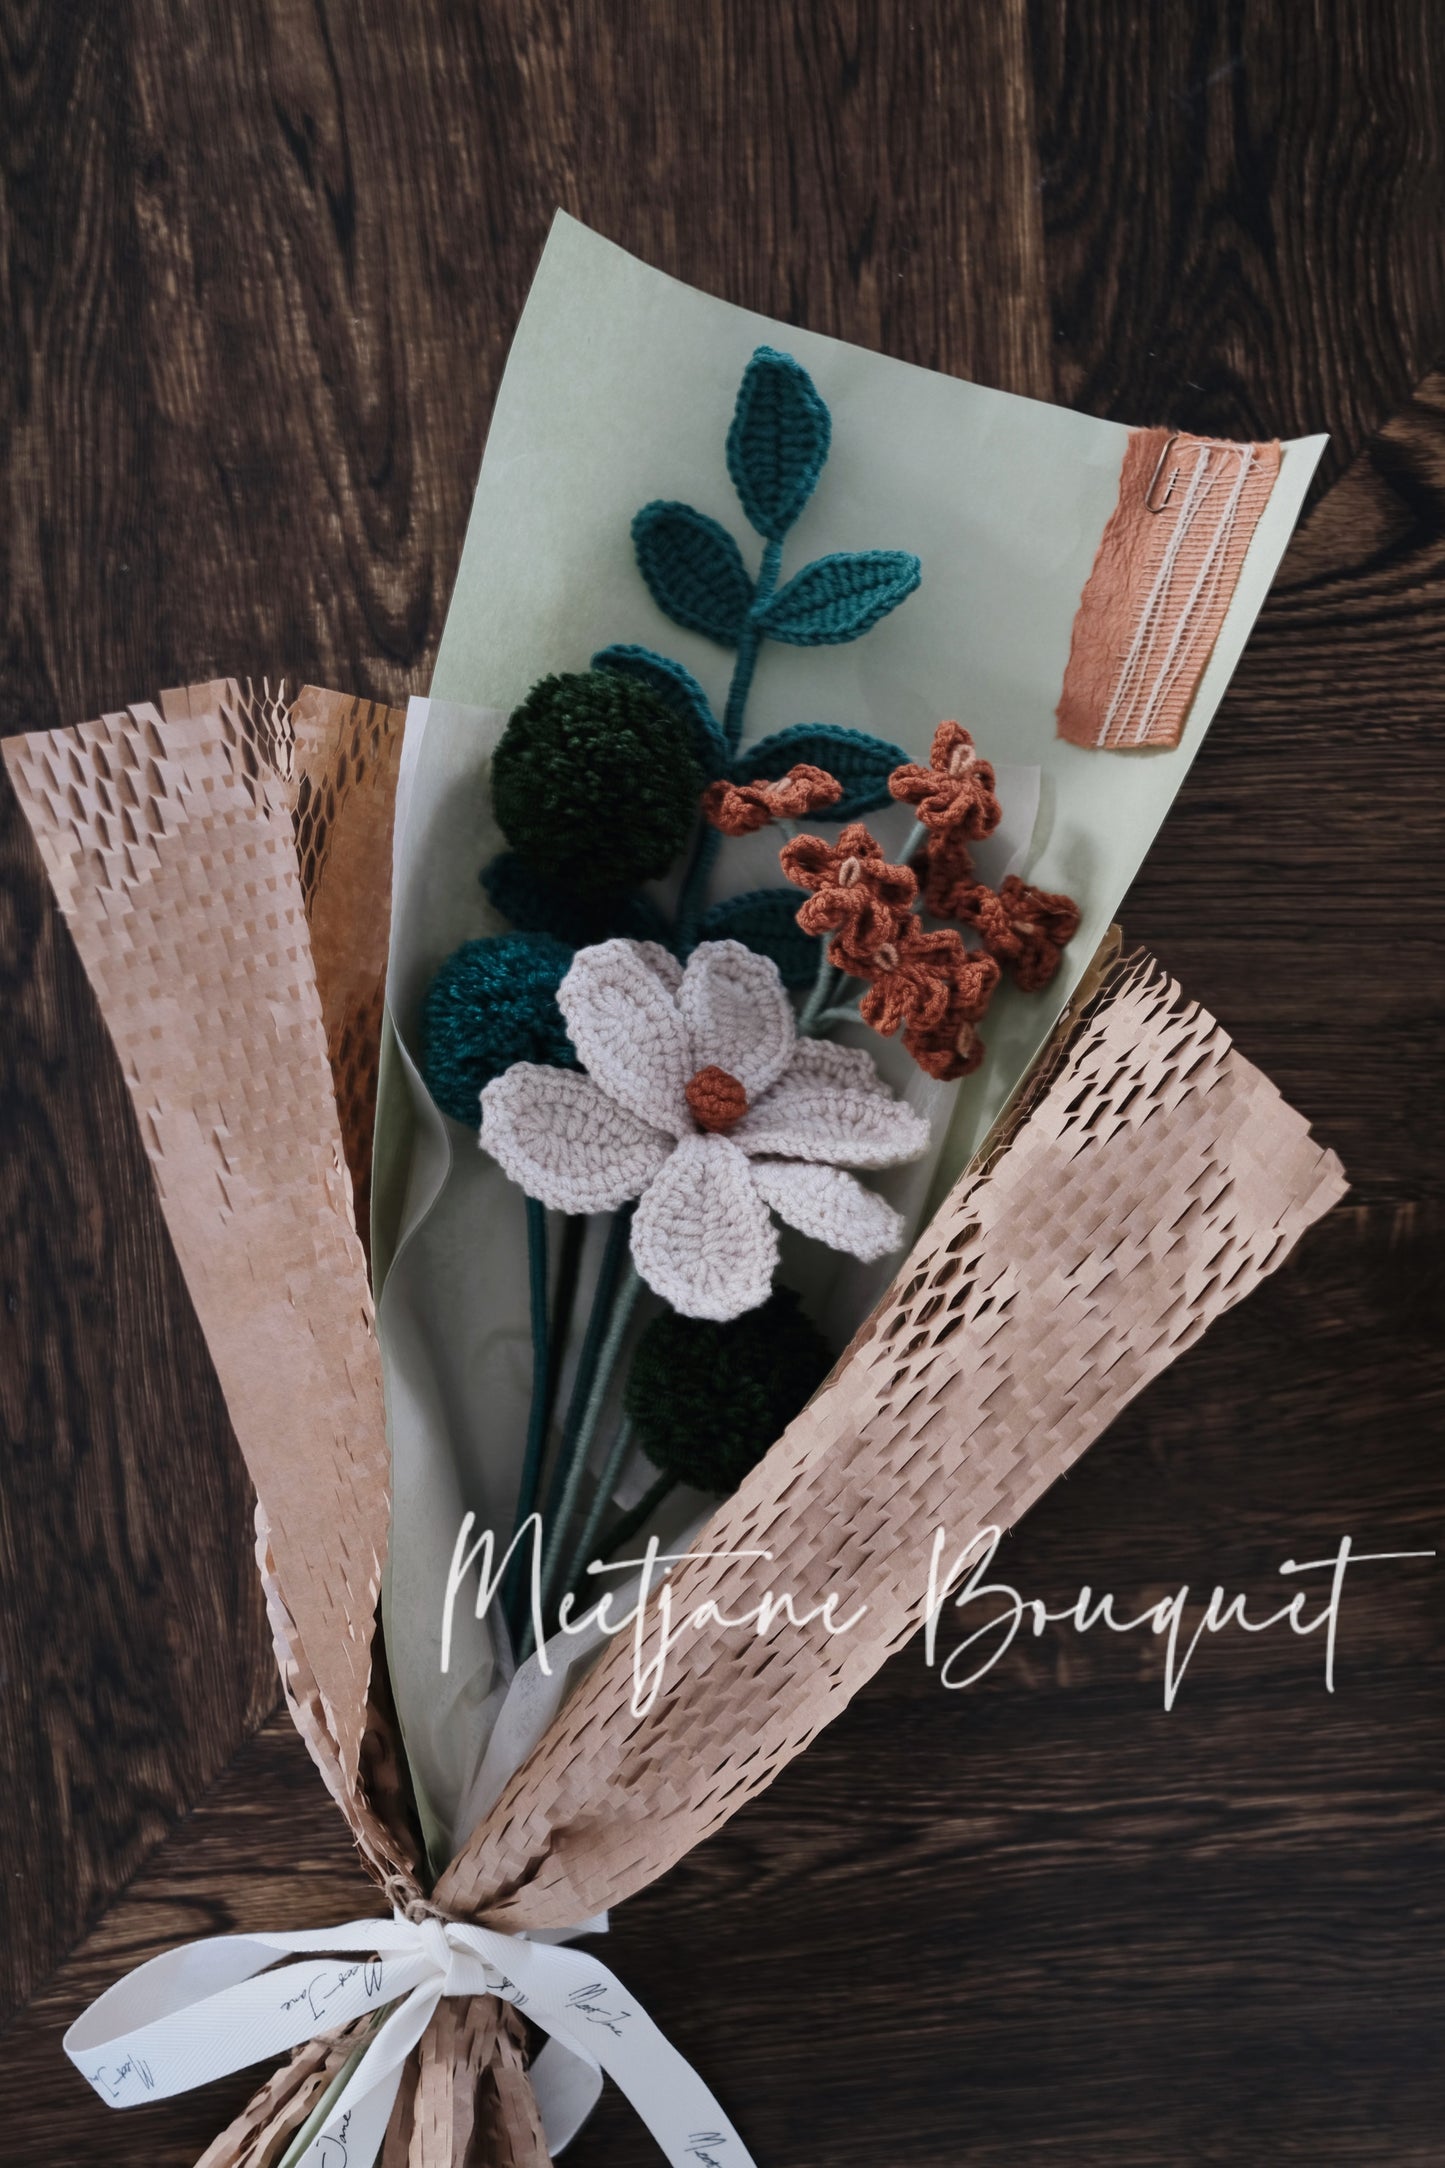 Meetjane Bouquet|Melbourne handmade |Graduation gift|Kelsang Flowers